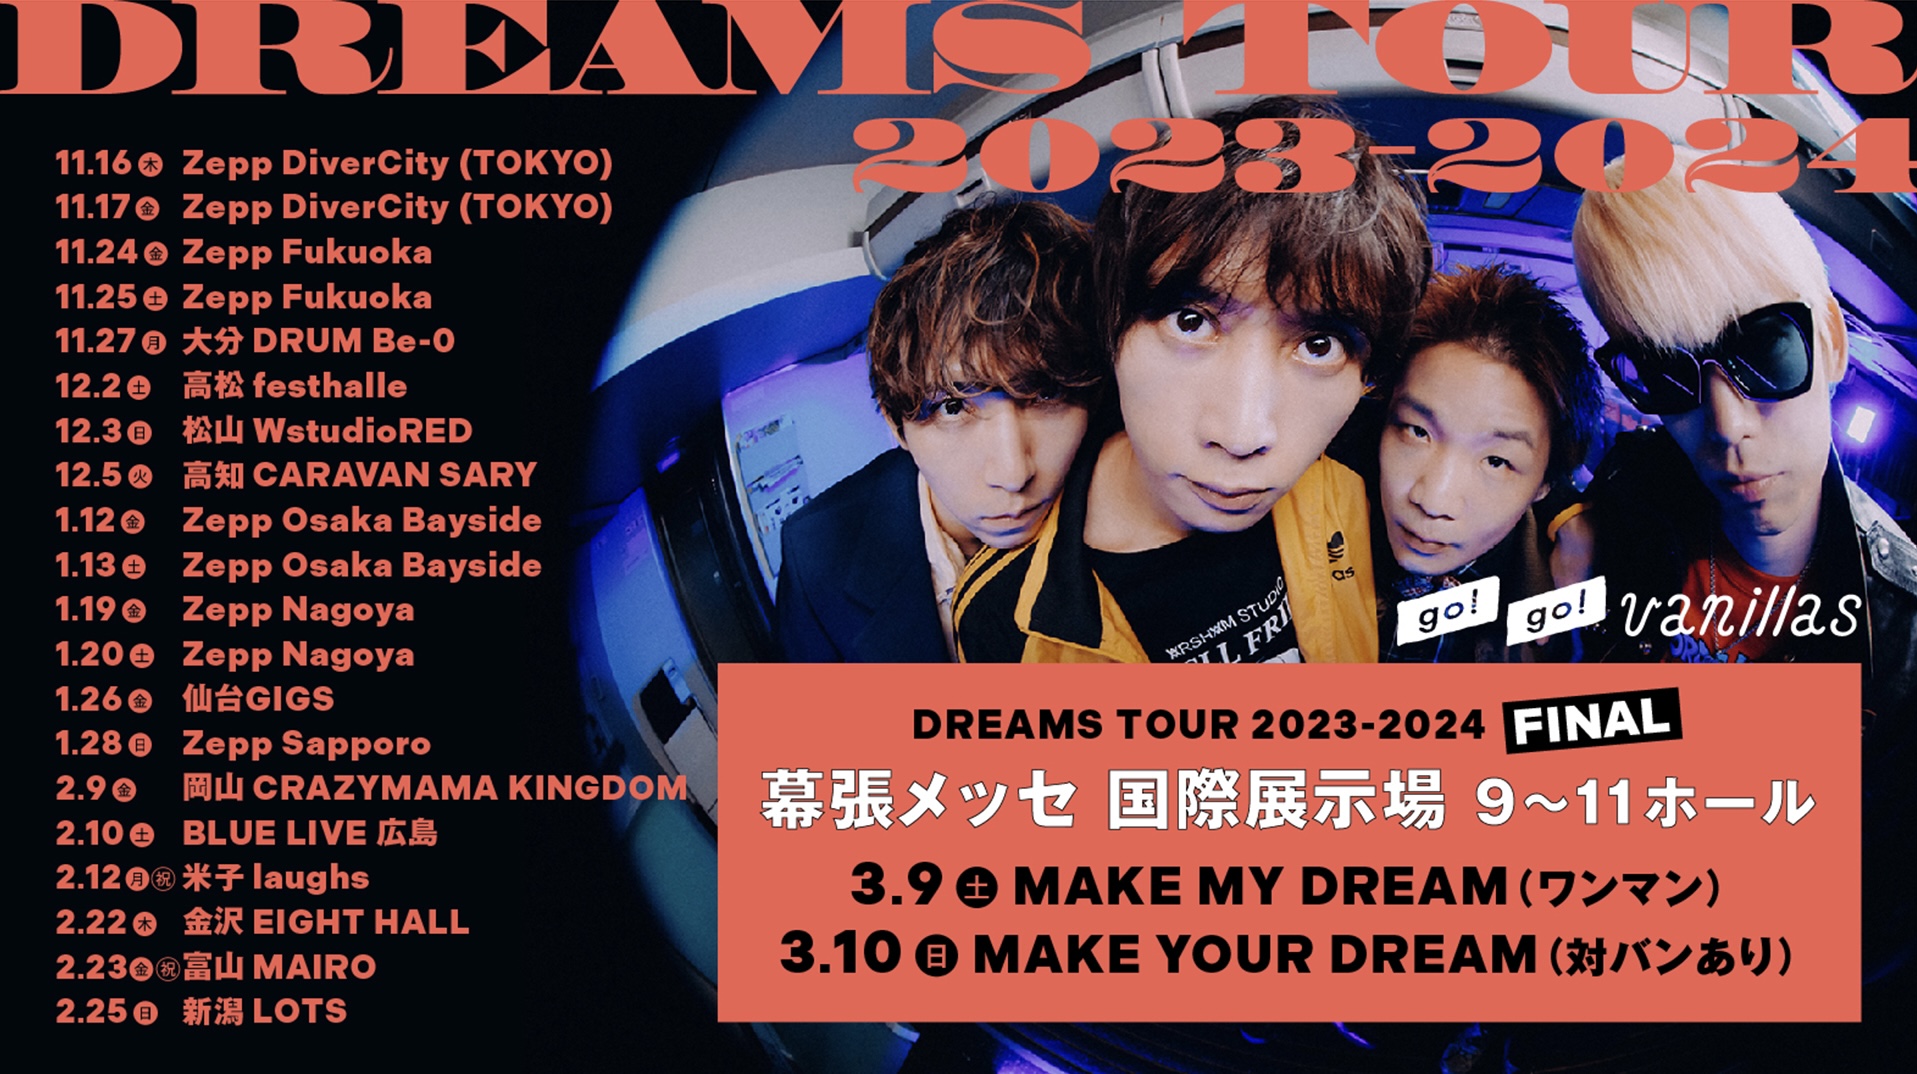 明日10/15(日)12:00より「DREAMS TOUR 2023-2024」ライブハウス公演 